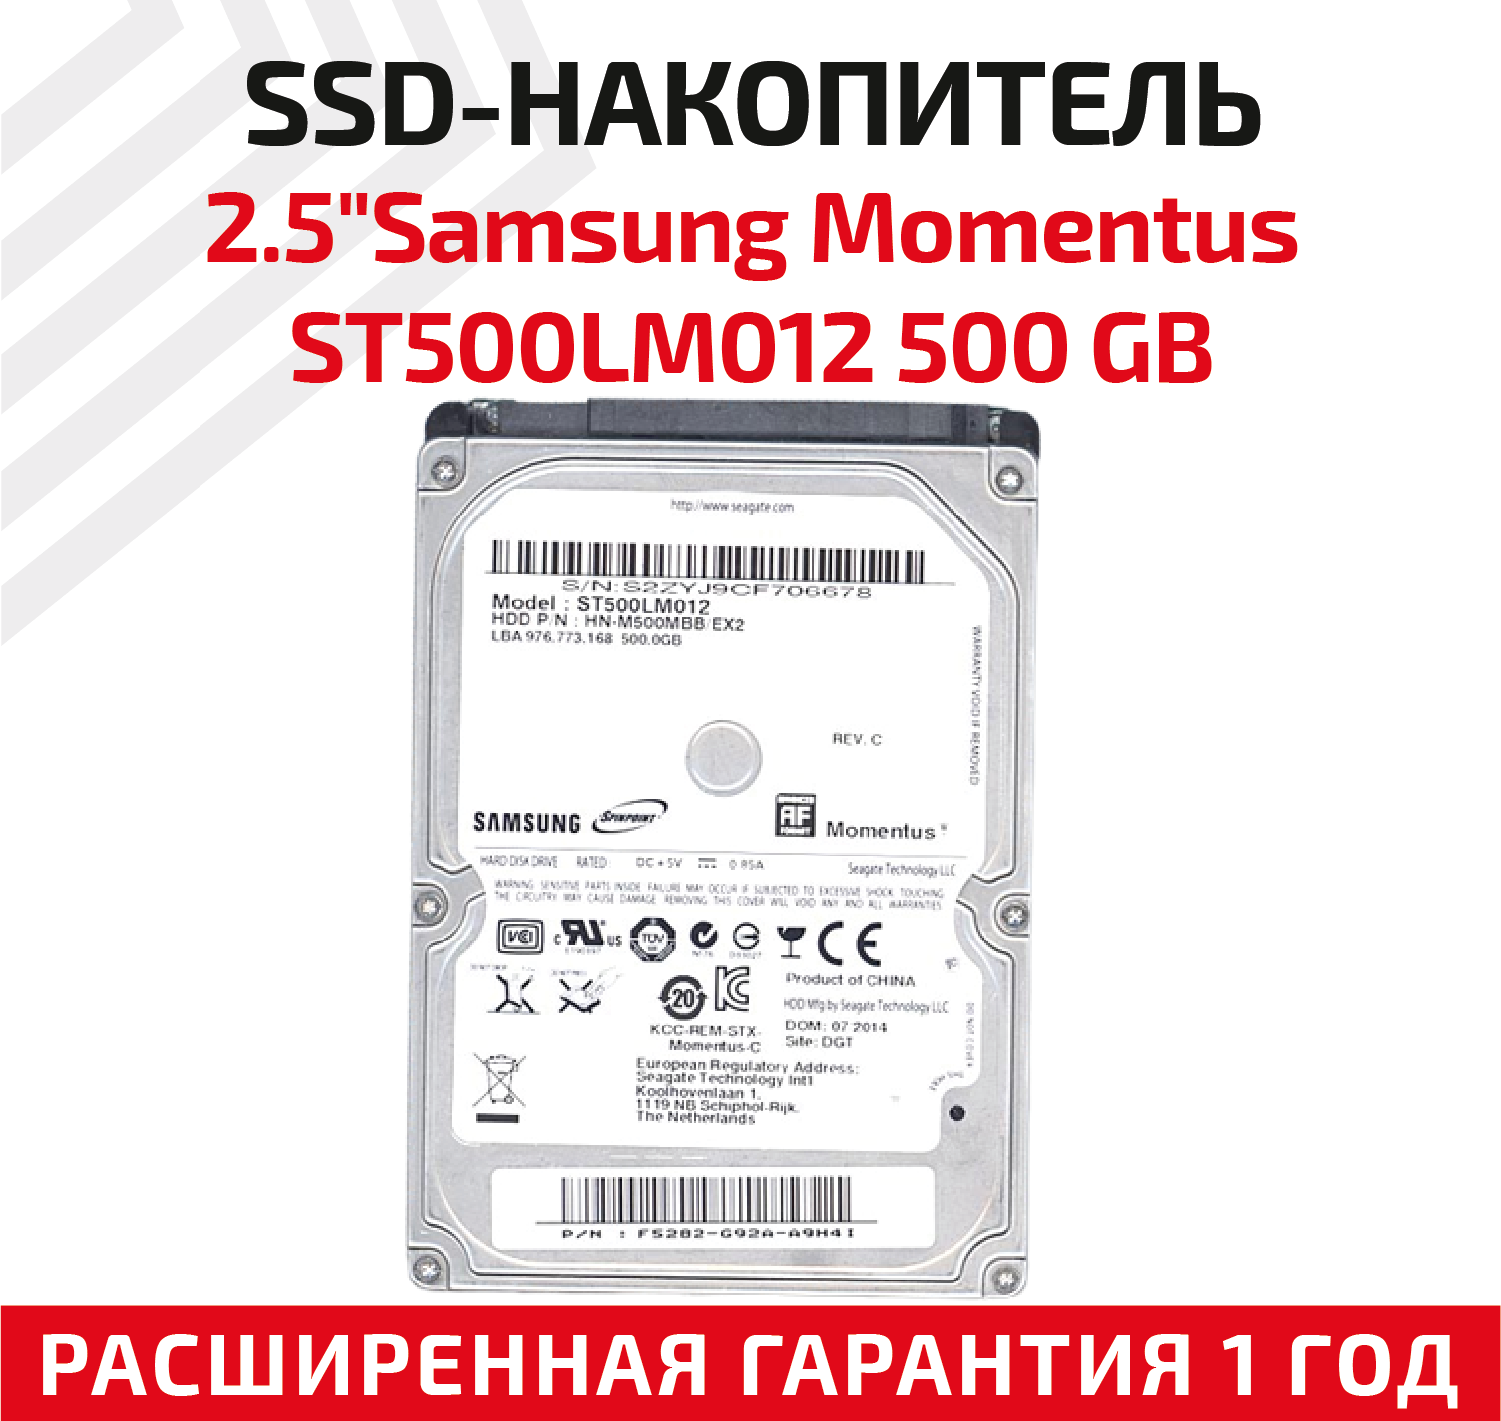 Стоит ли покупать Жесткий диск Seagate Momentus 500 ГБ ST500LM012? Отзывы  на Яндекс Маркете